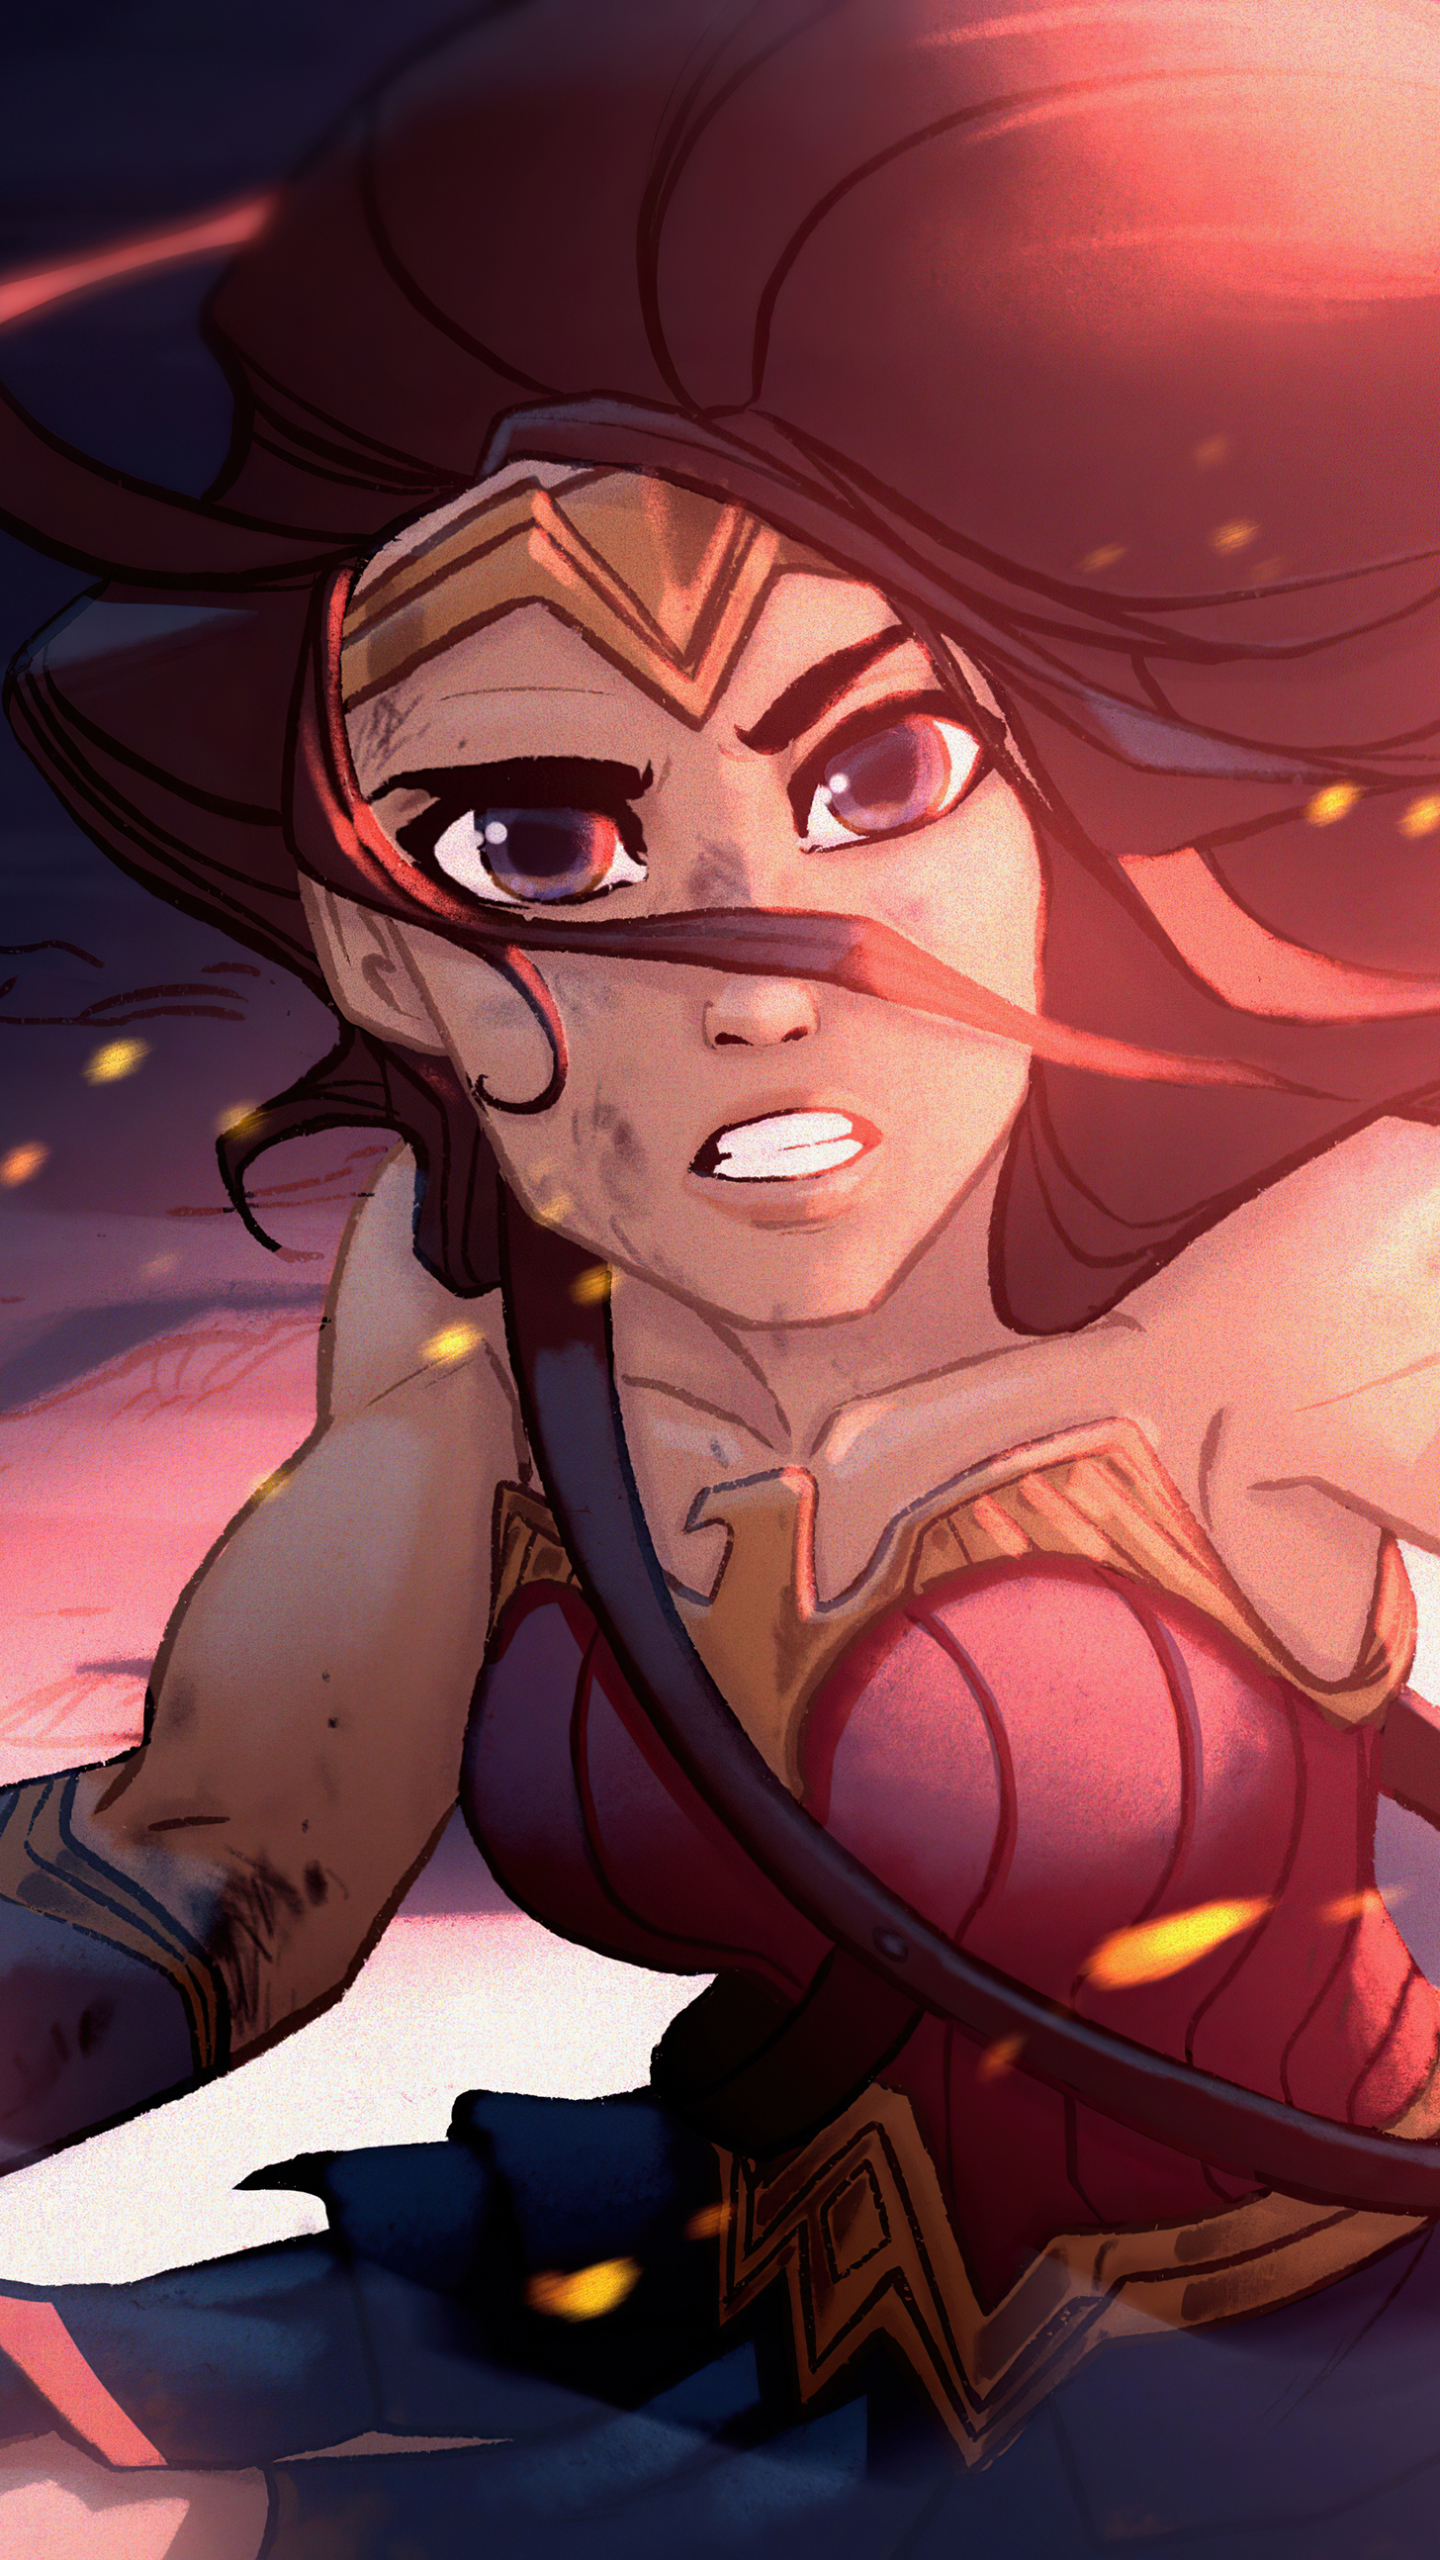 Descarga gratuita de fondo de pantalla para móvil de Historietas, Dc Comics, Mujer Guerrera, La Mujer Maravilla, Mujer Maravilla.